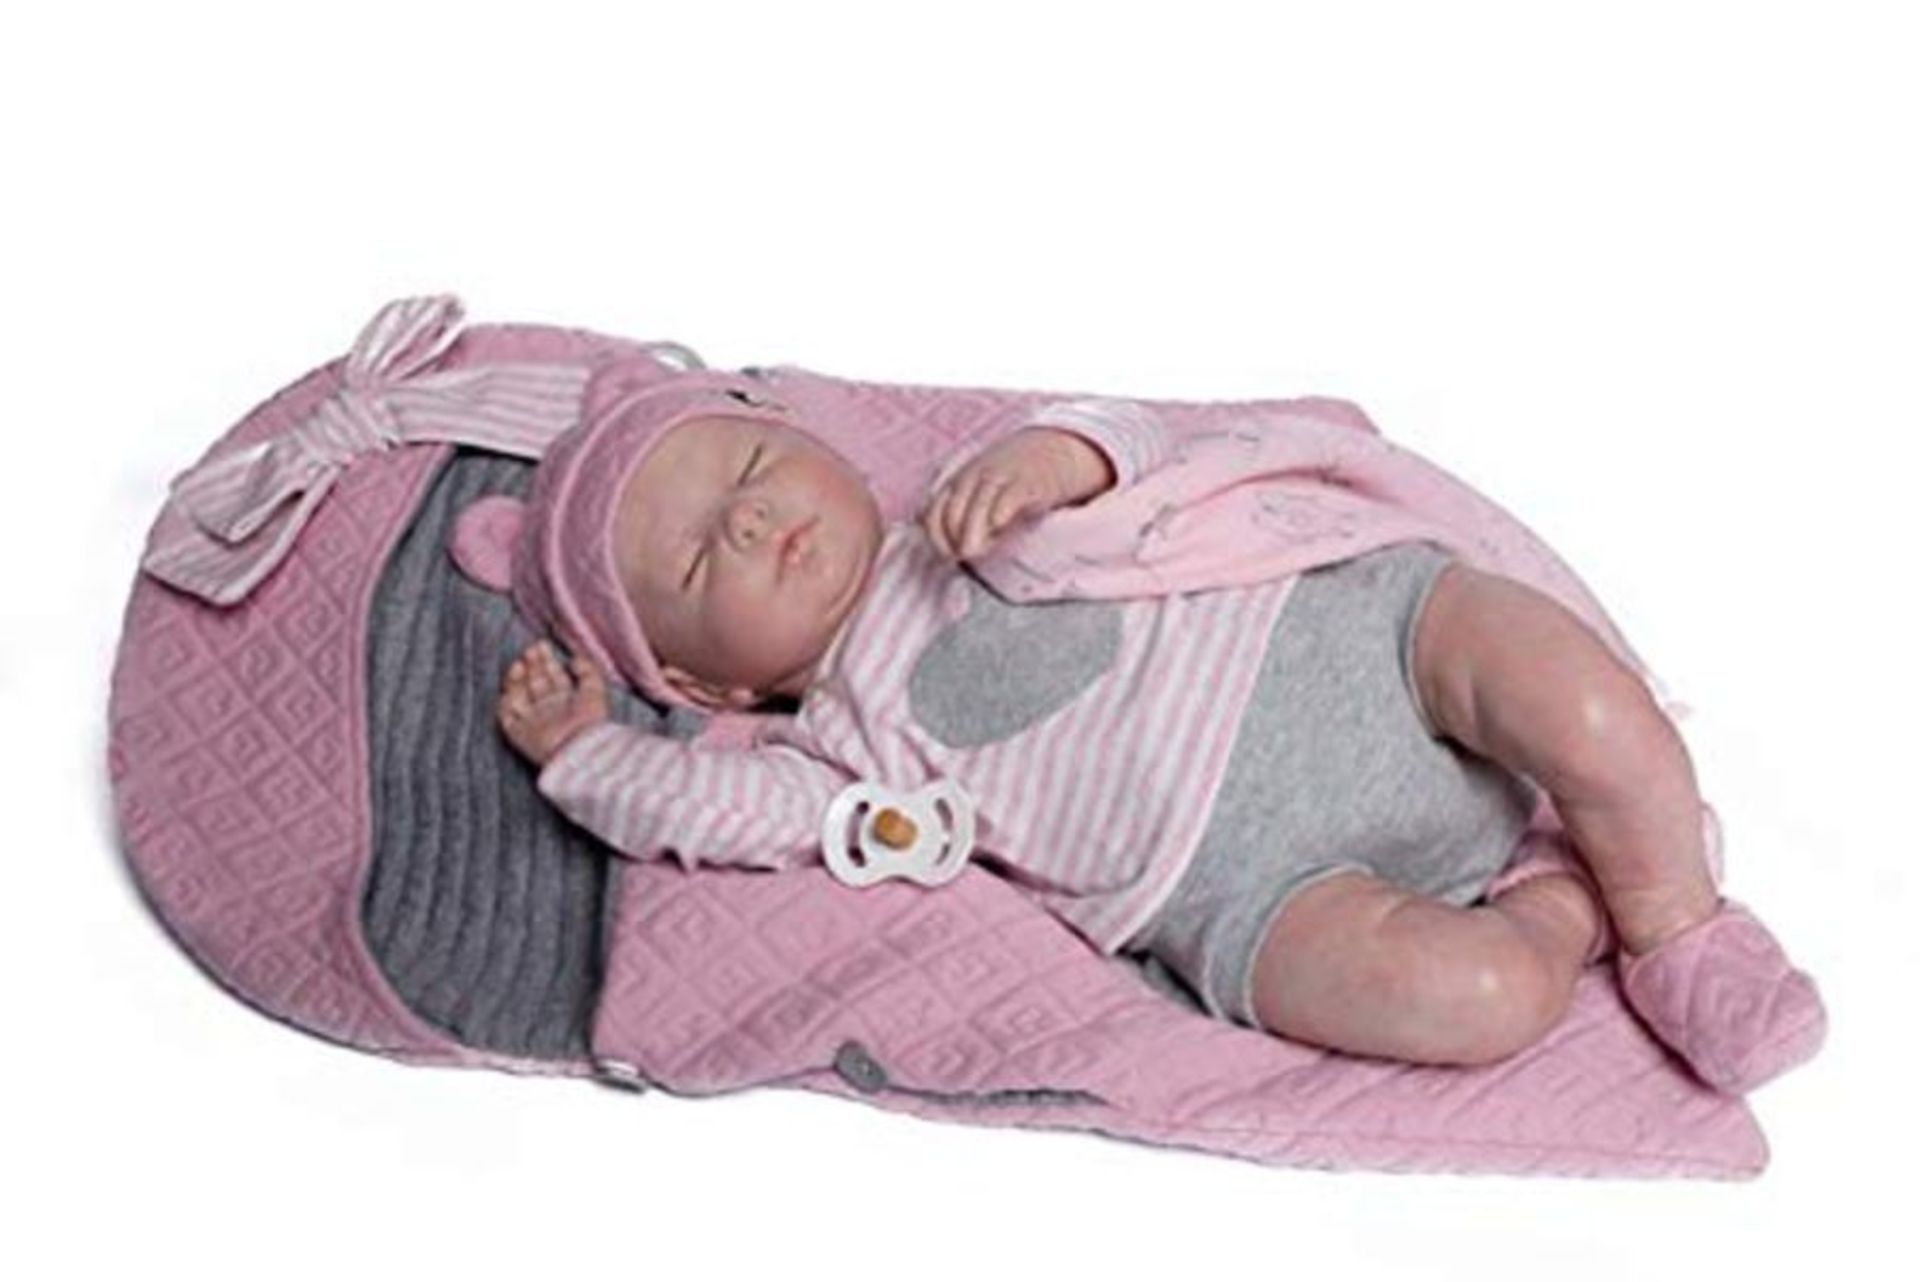 RRP £145.00 [CRACKED] Puppe Guca - Puppe Reborn Emma Pyjamita grau mit Lätzchen, Musselin und Ros